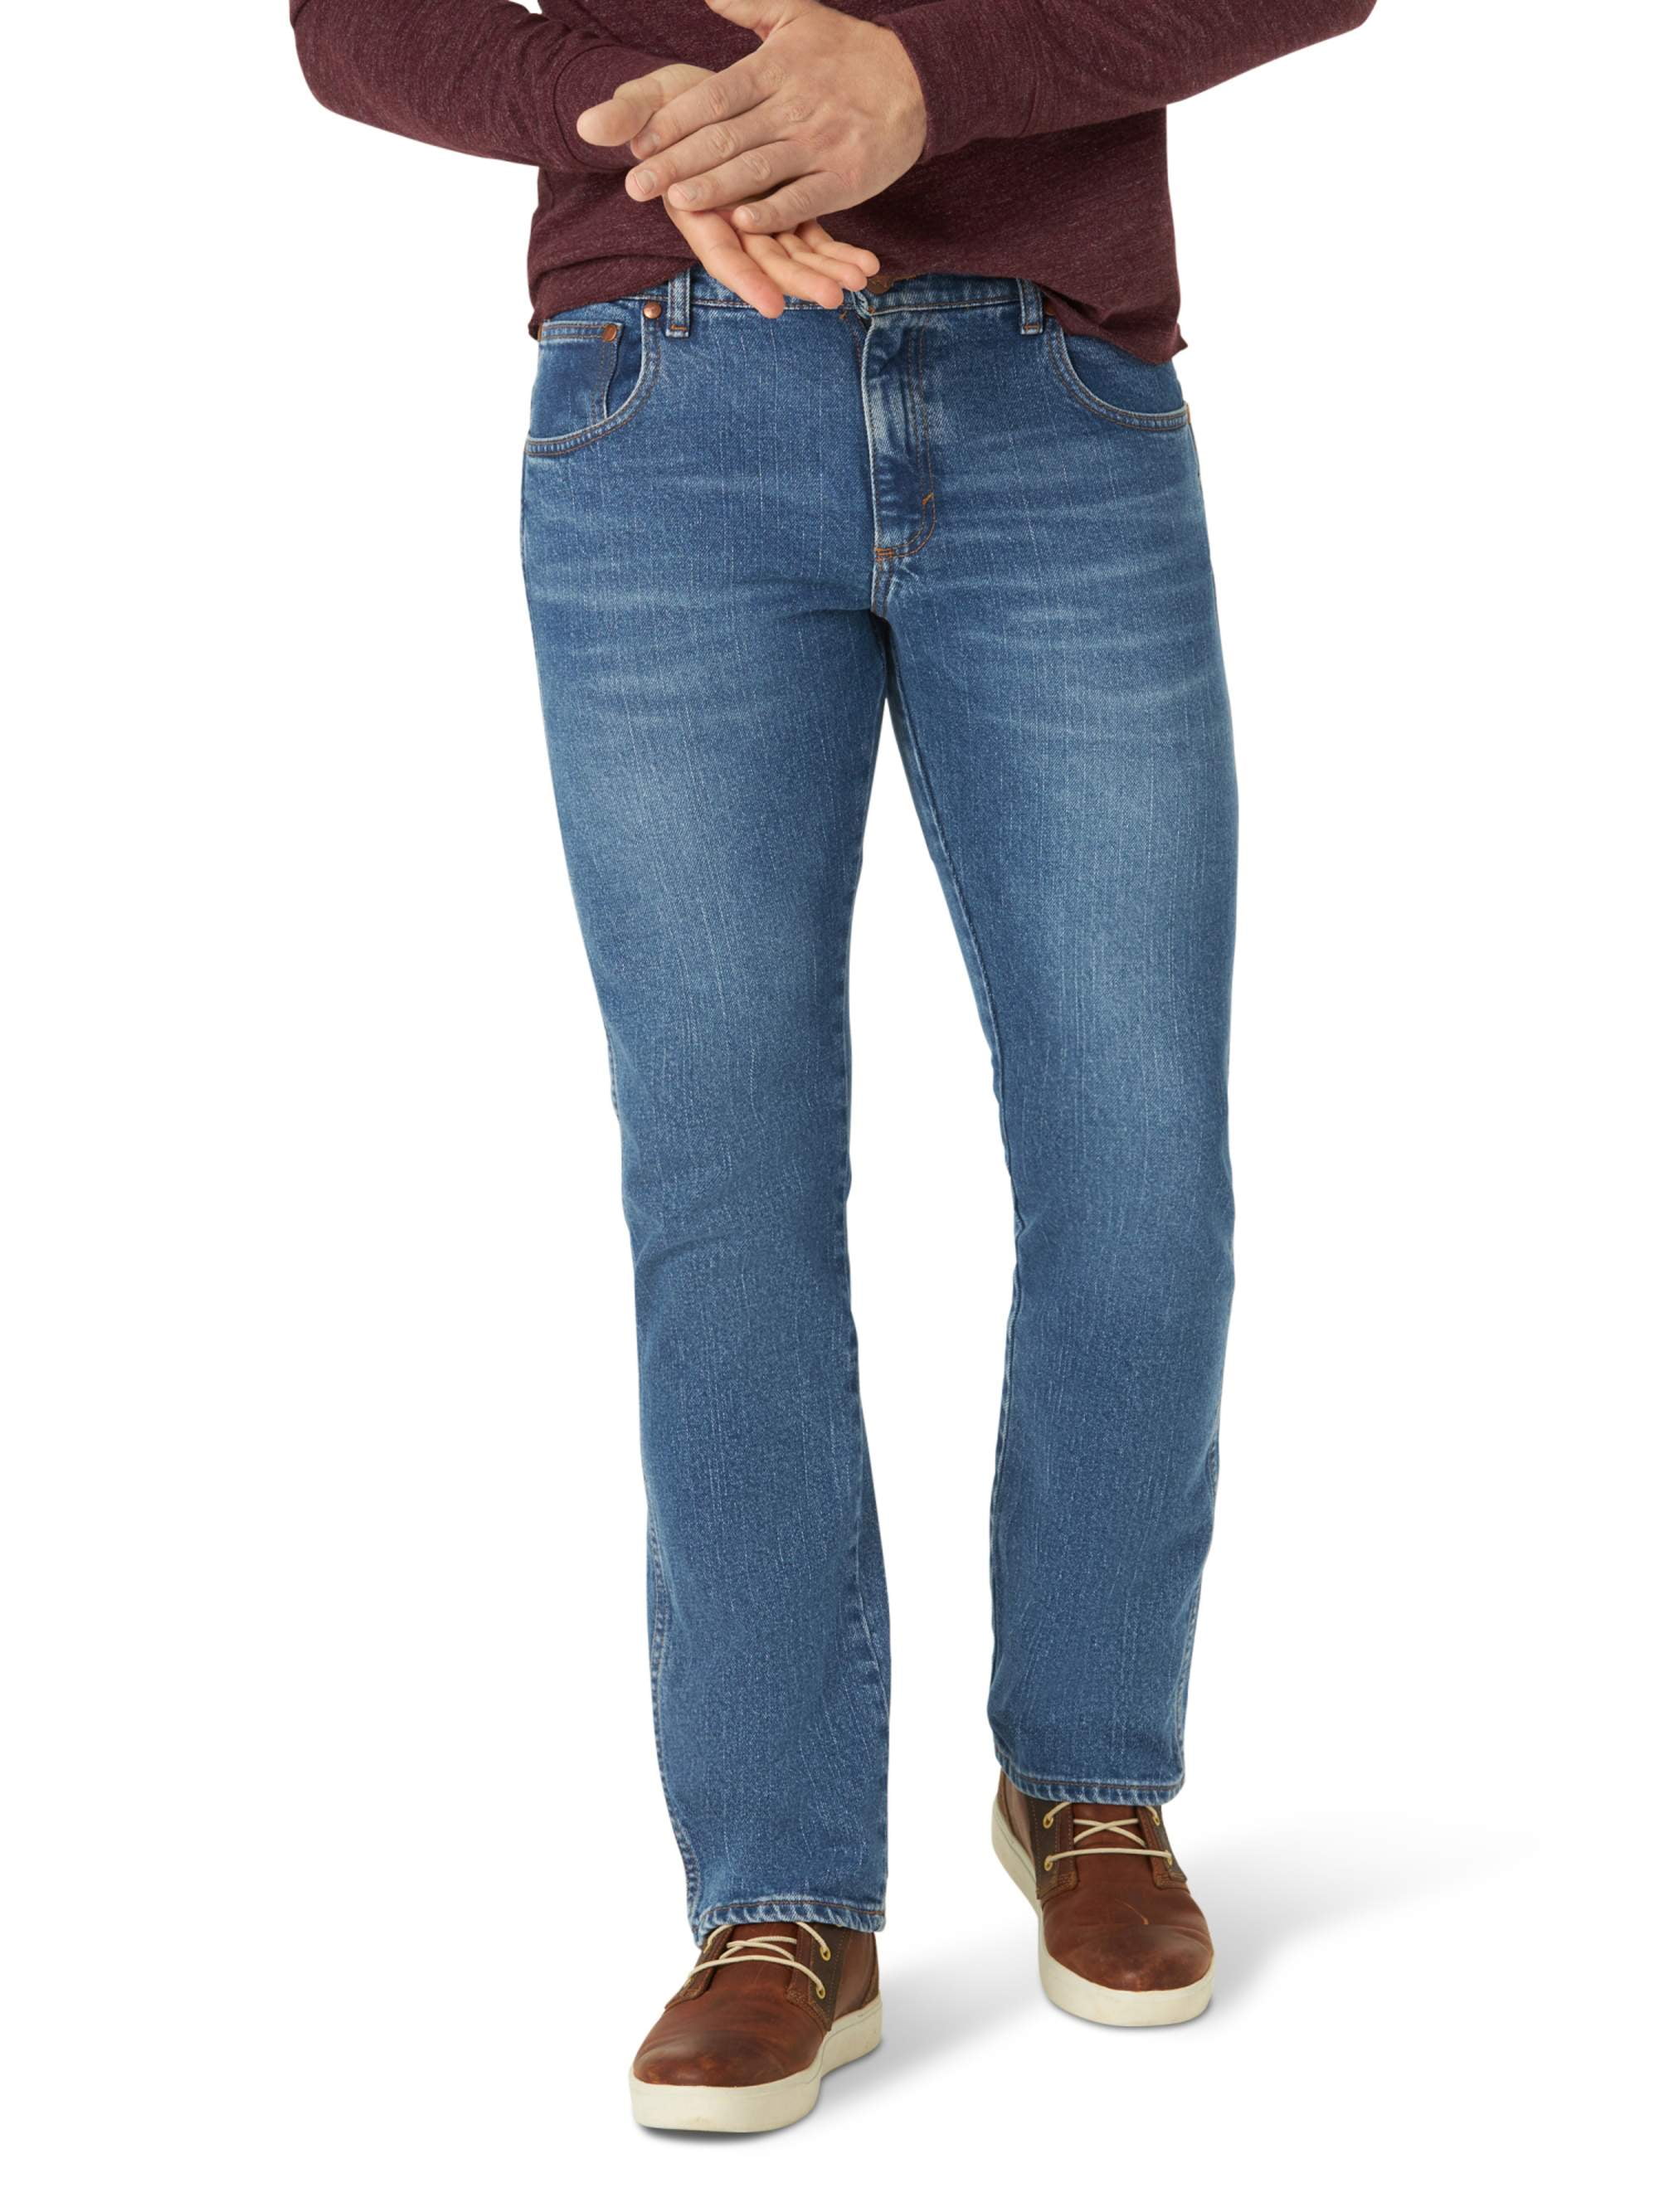 wrangler jeans highest price